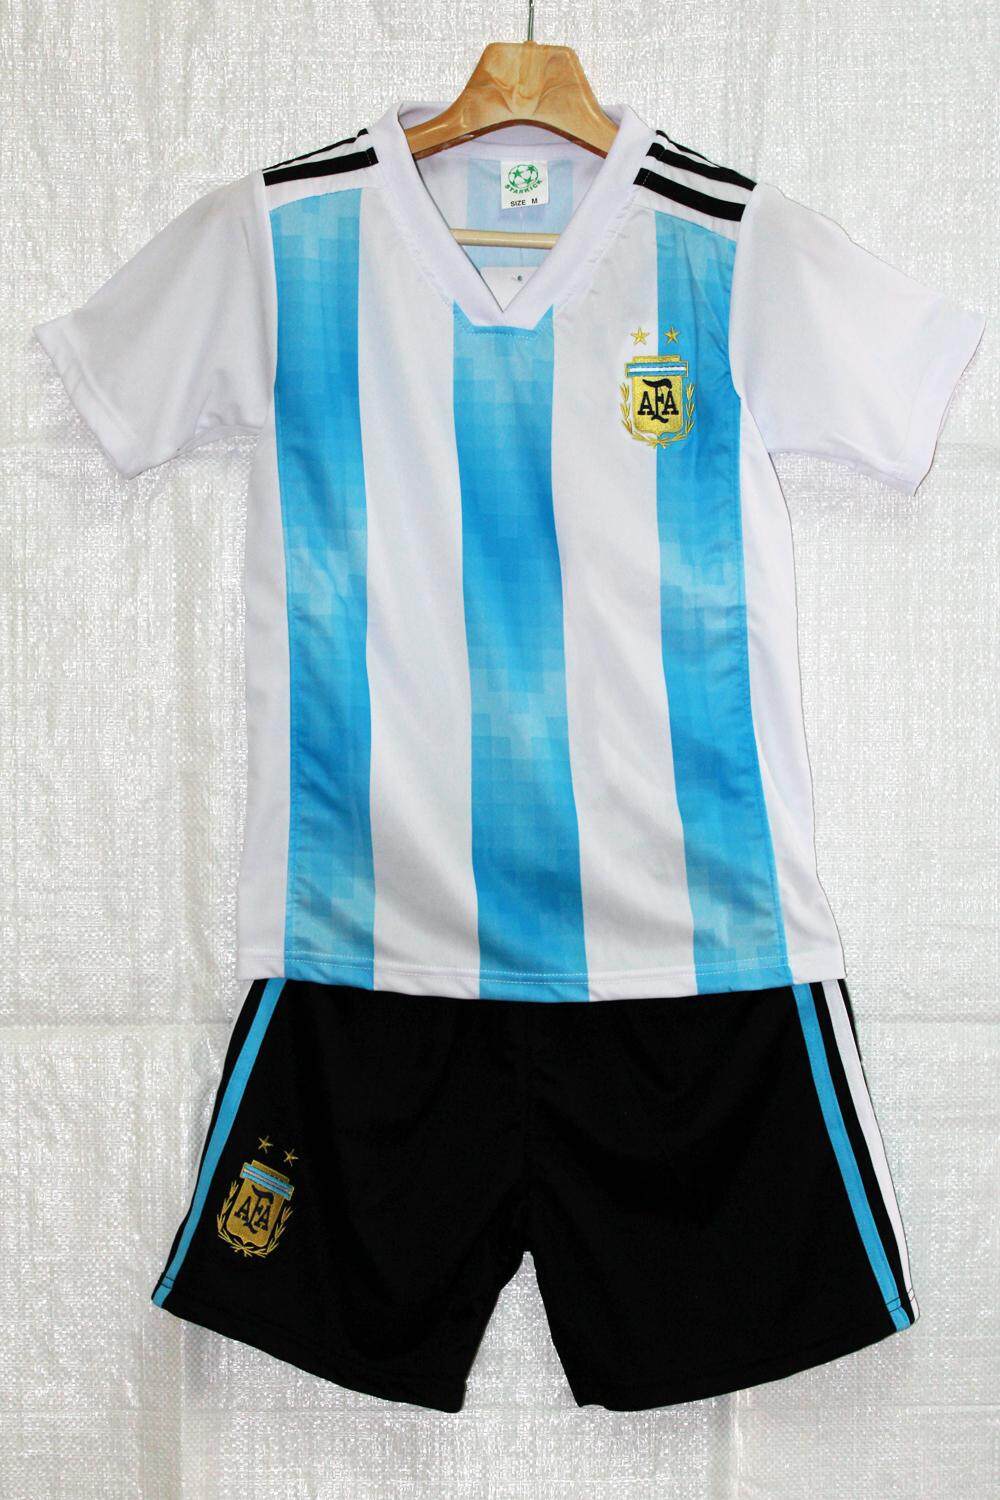 ชุดฟุตบอลเด็ก ทีมชาติ อาเจนติน่า Size S,M,L,XL,XXL สีริ้วฟ้าขาว